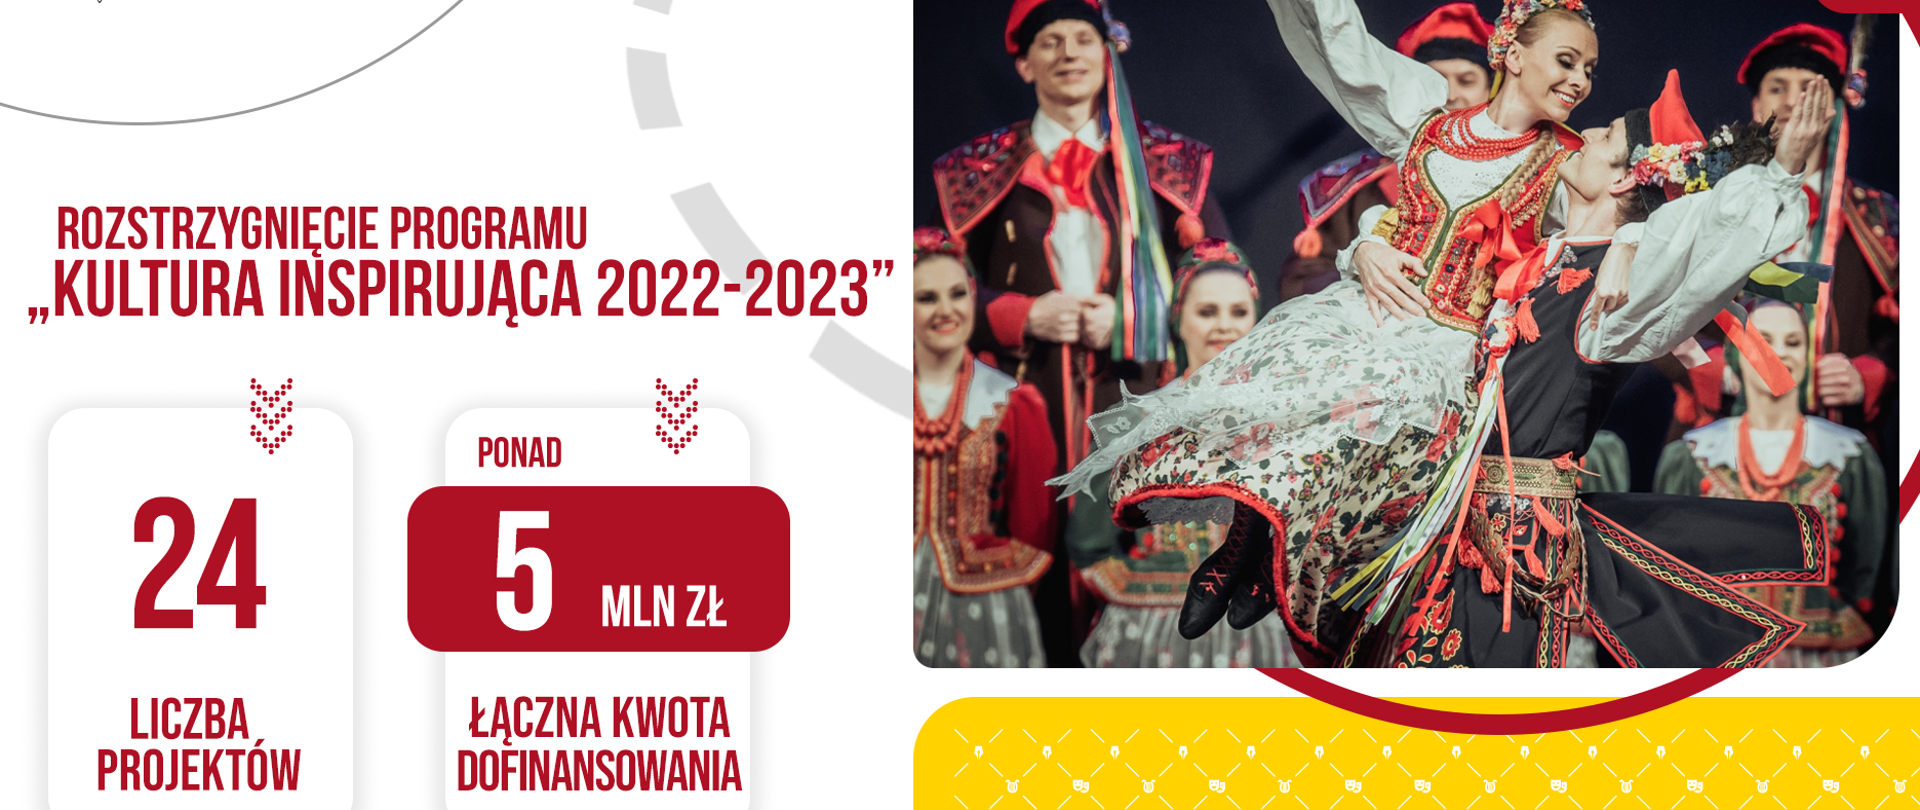 Wyniki naboru do programu Kultura Inspirująca na lata 2022-2023